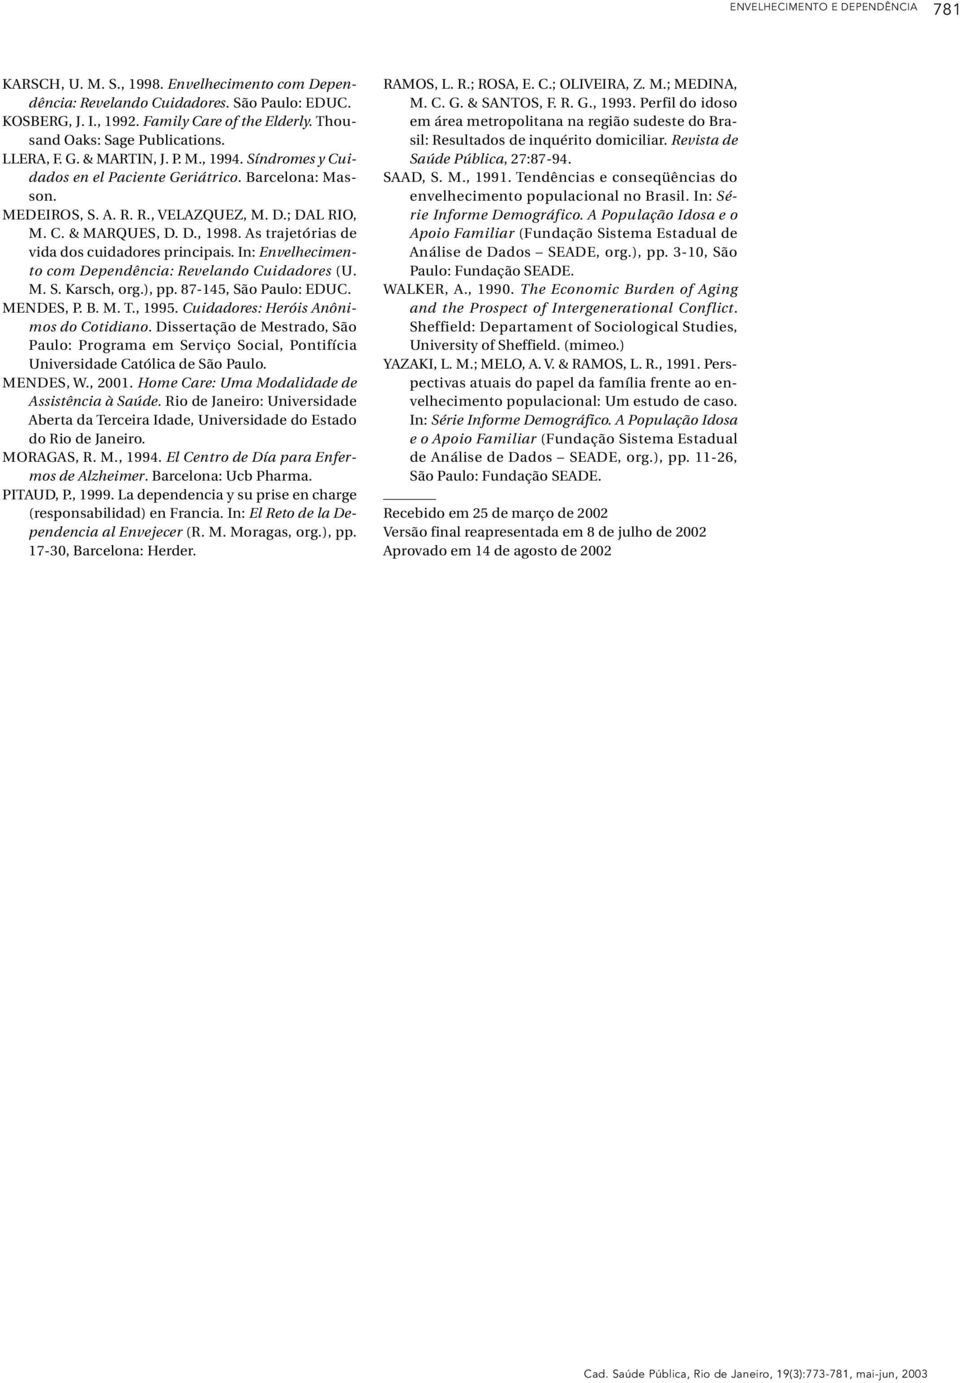 D., 1998. As trajetórias de vida dos cuidadores principais. In: Envelhecimento com Dependência: Revelando Cuidadores (U. M. S. Karsch, org.), pp. 87-145, São Paulo: EDUC. MENDES, P. B. M. T., 1995.